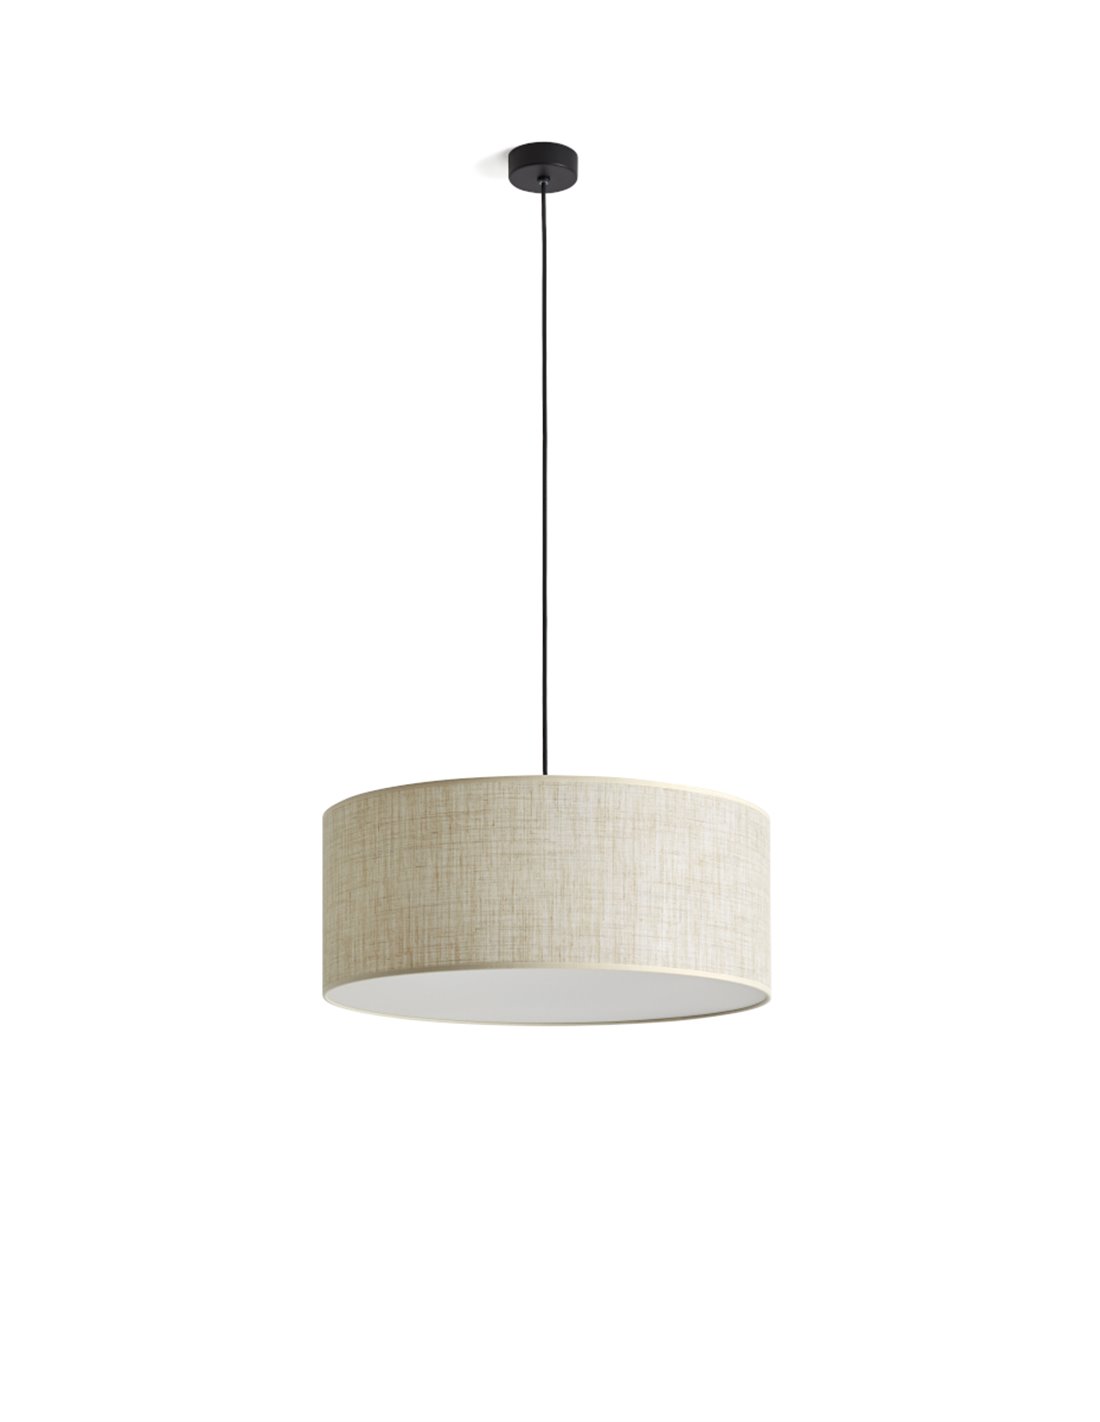 Alacena Latón parilla Lámpara colgante Simplicity – Massmi – Pantalla redonda de lino, Disponible  en 3 tamaños